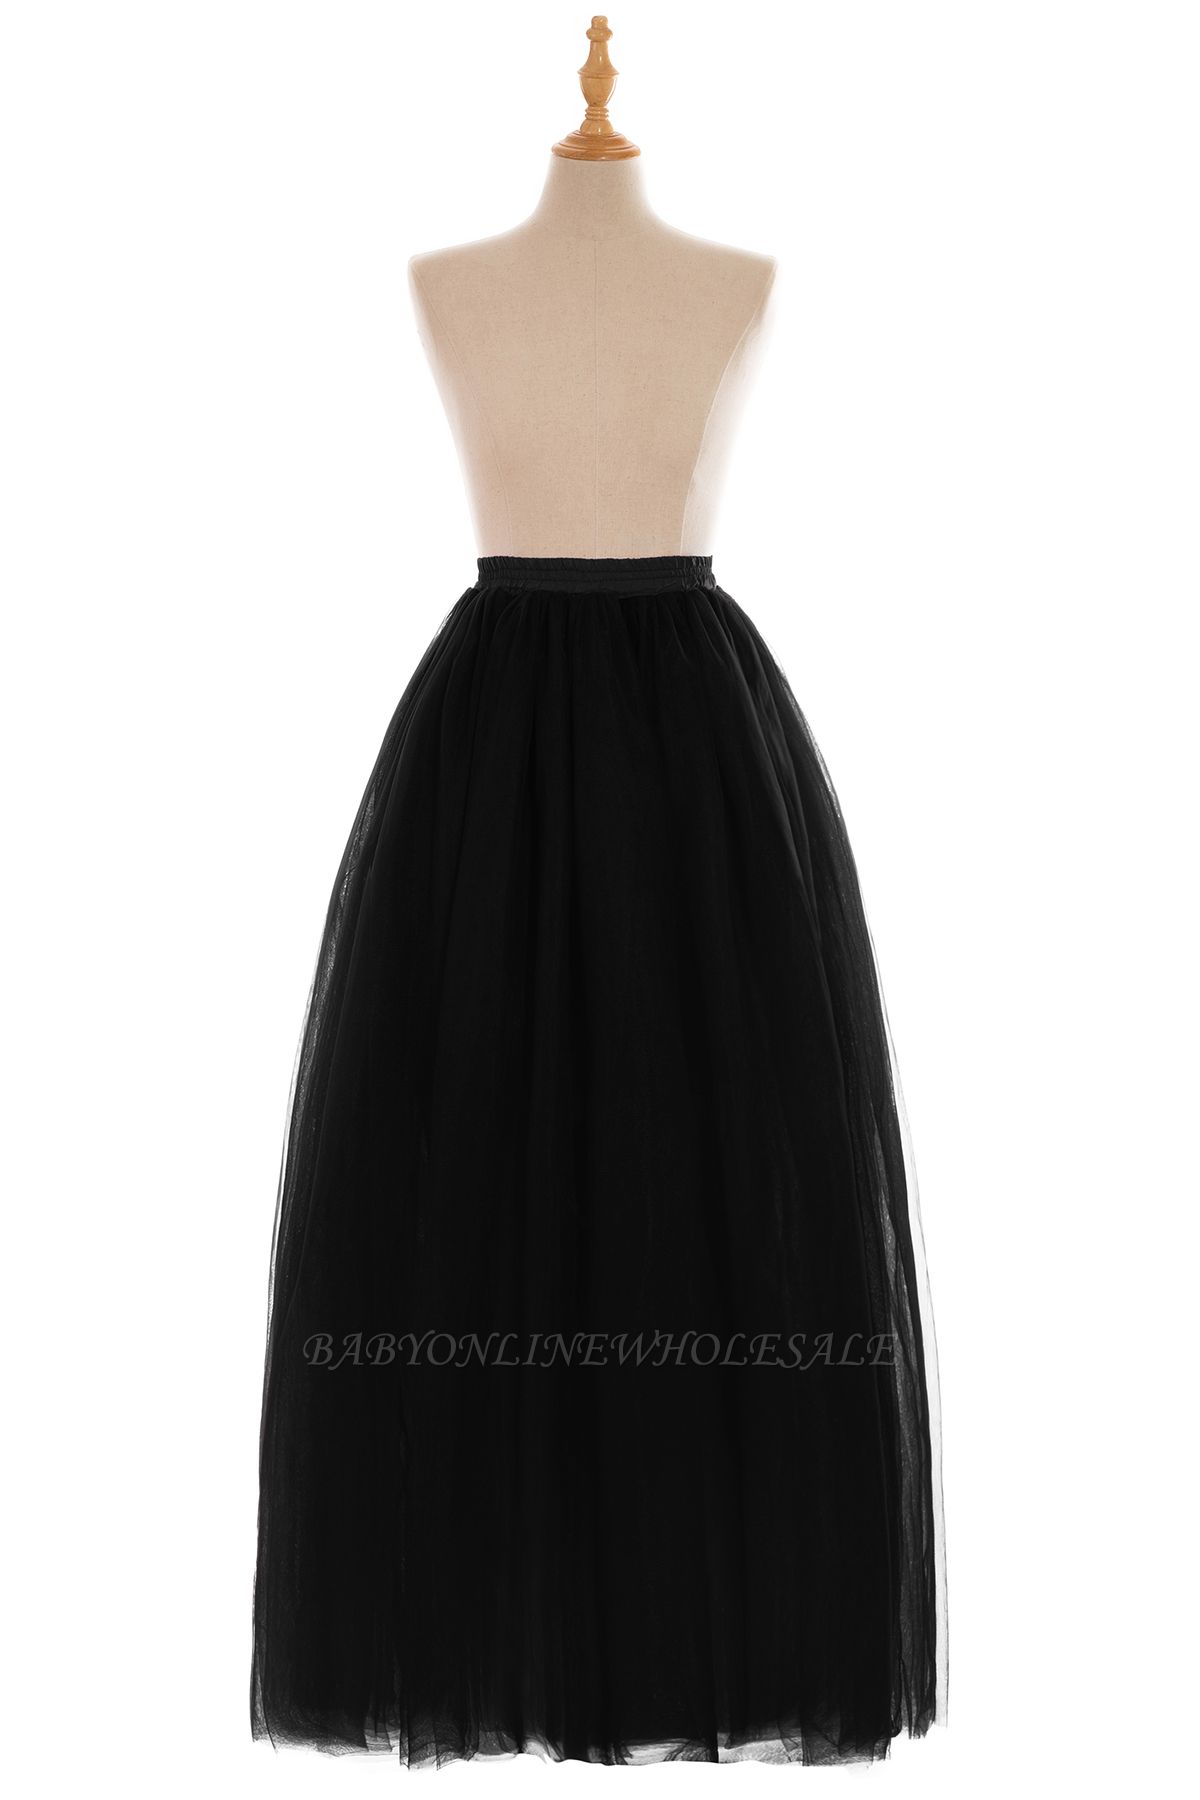 Glamorous A-line Floor-Length Skirt | Elastic Women's Skirts